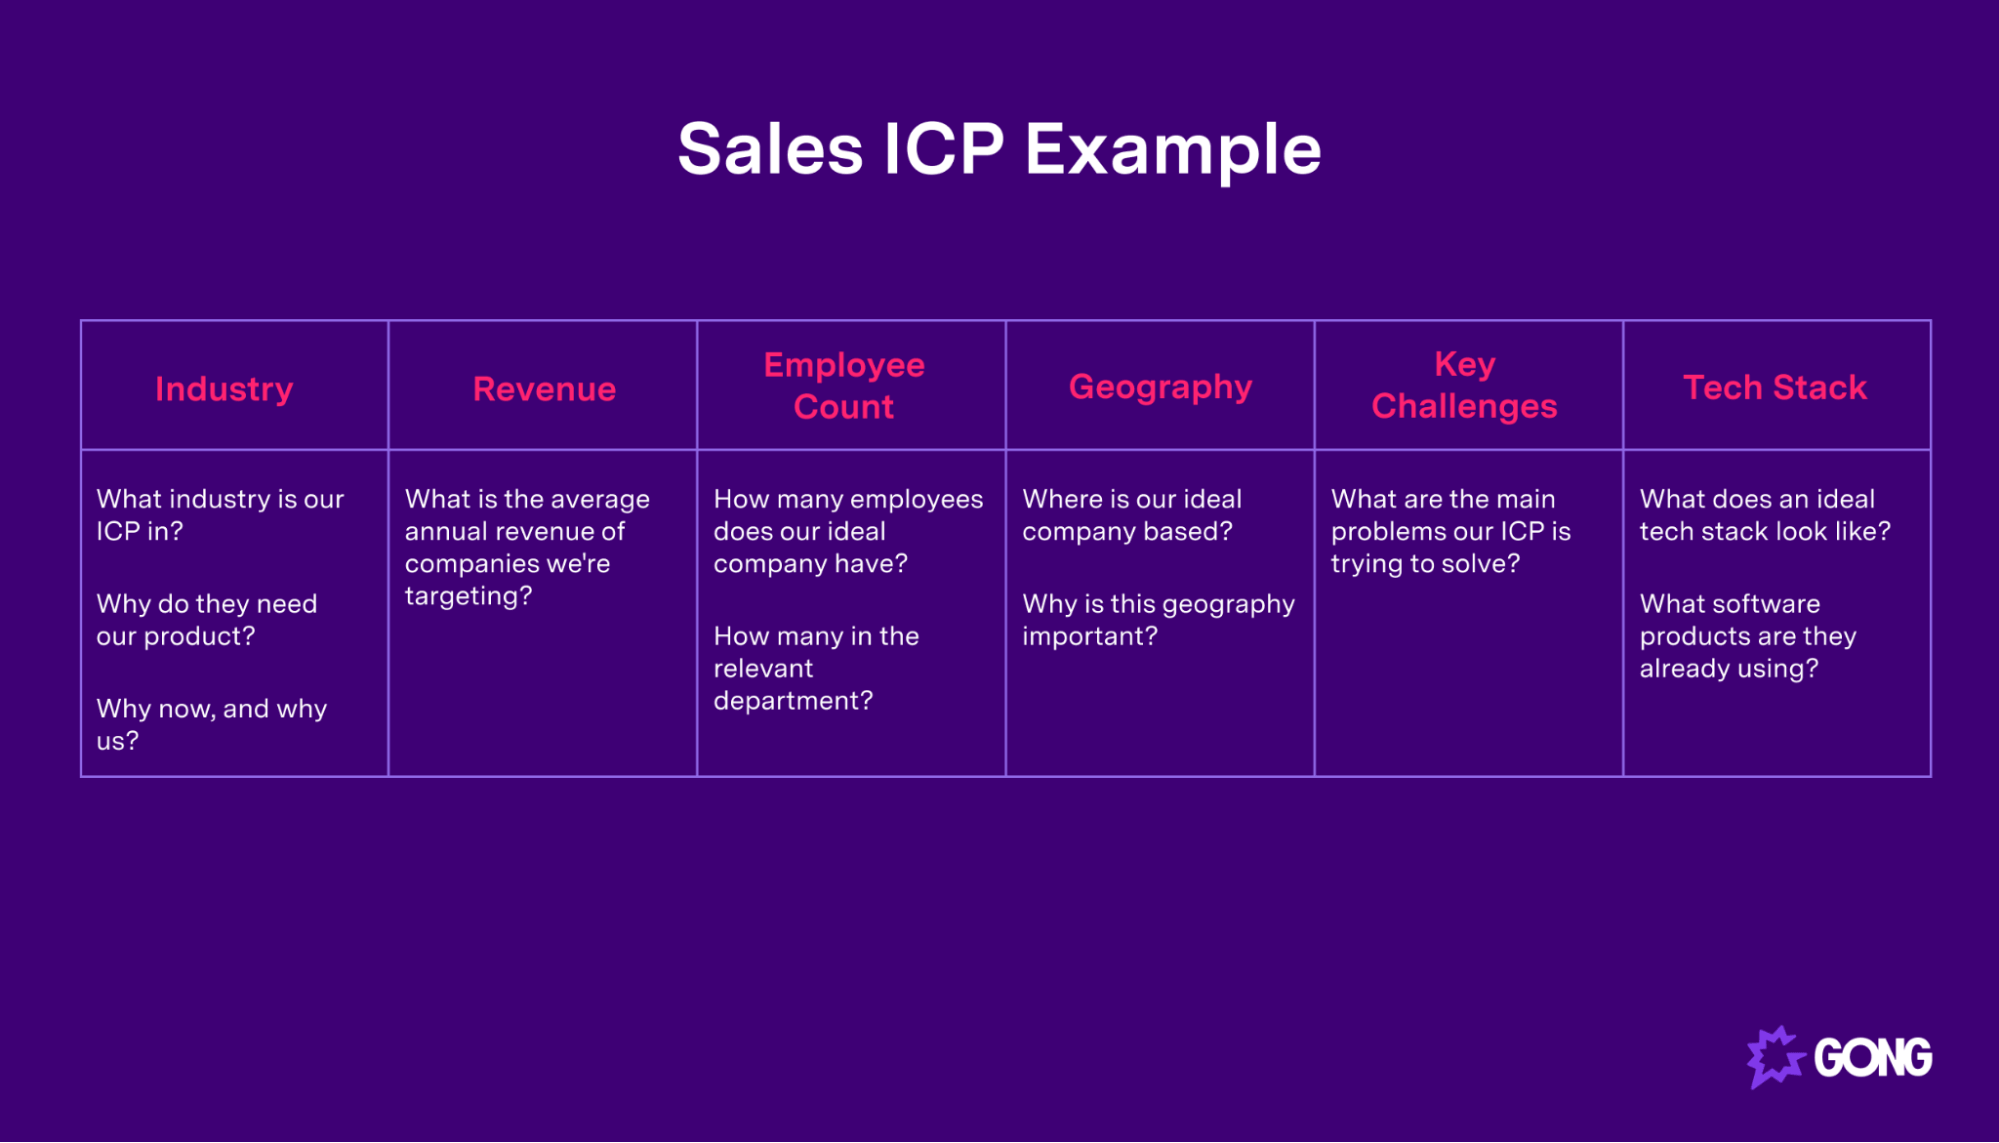 Sales ICP example